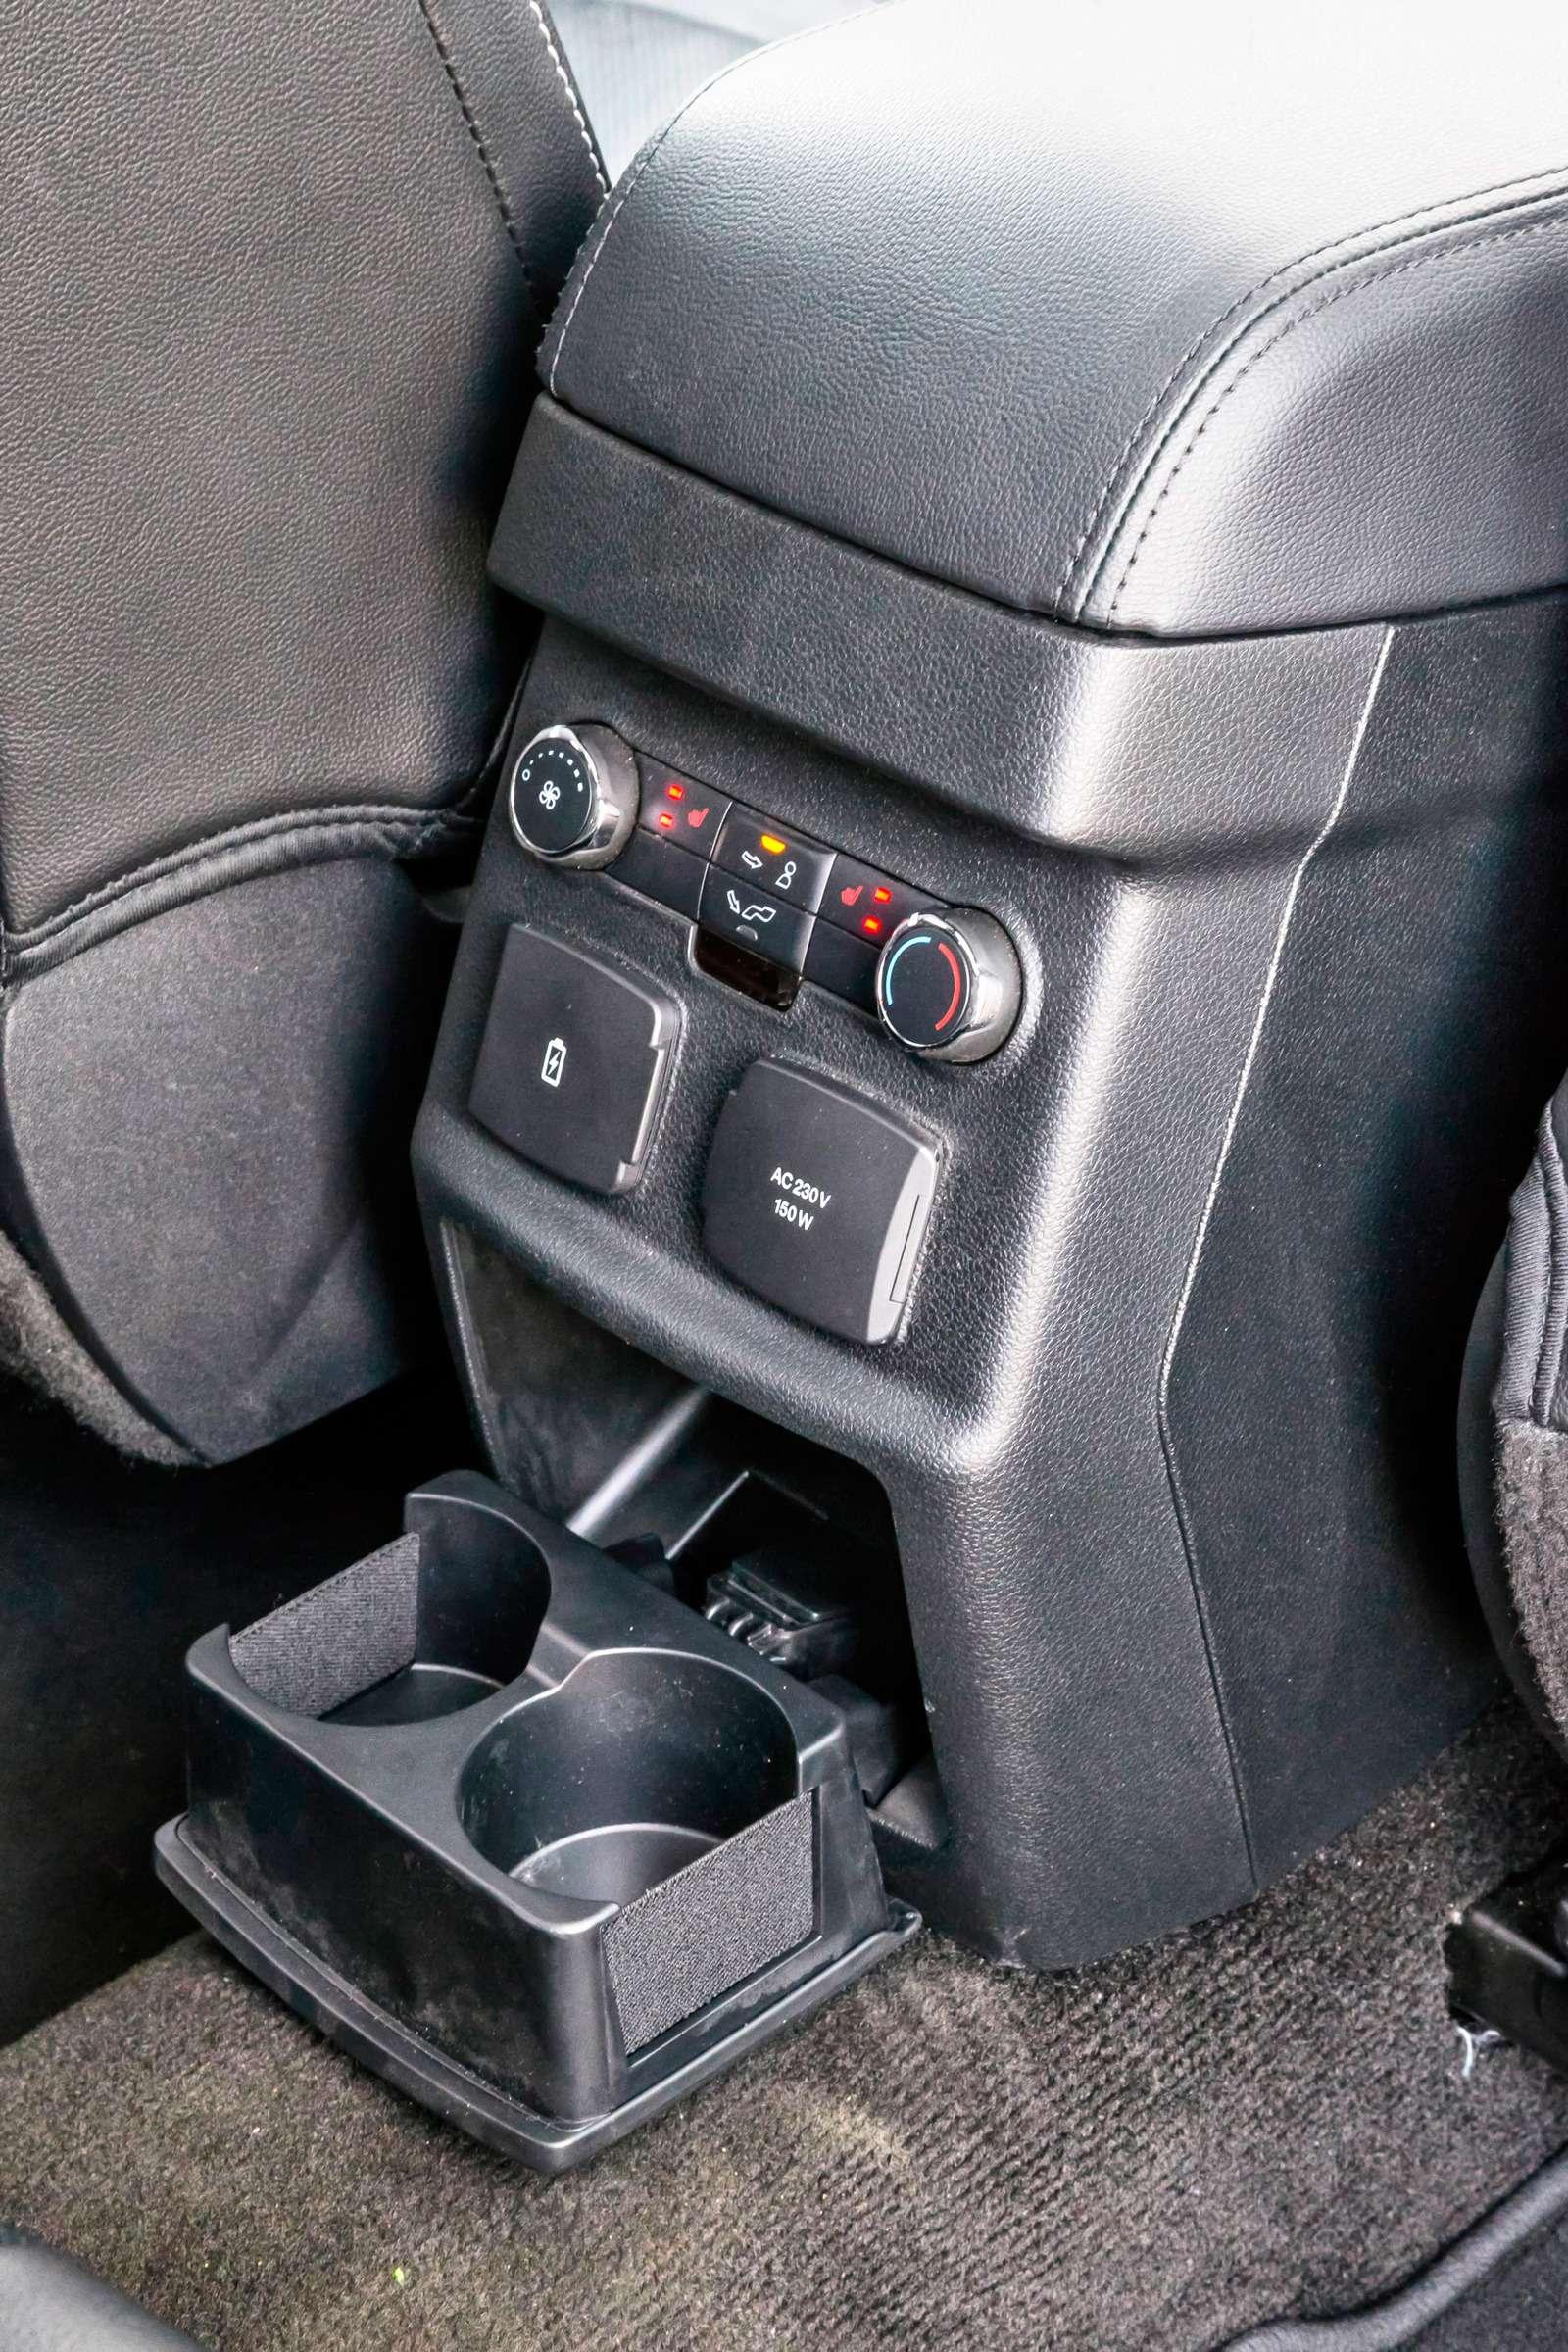 Ford Explorer. К услугам пассажиров – блок управления «погодой», два USB-порта и розетка на 220 В. Но она американского образца – потребуется адаптер.